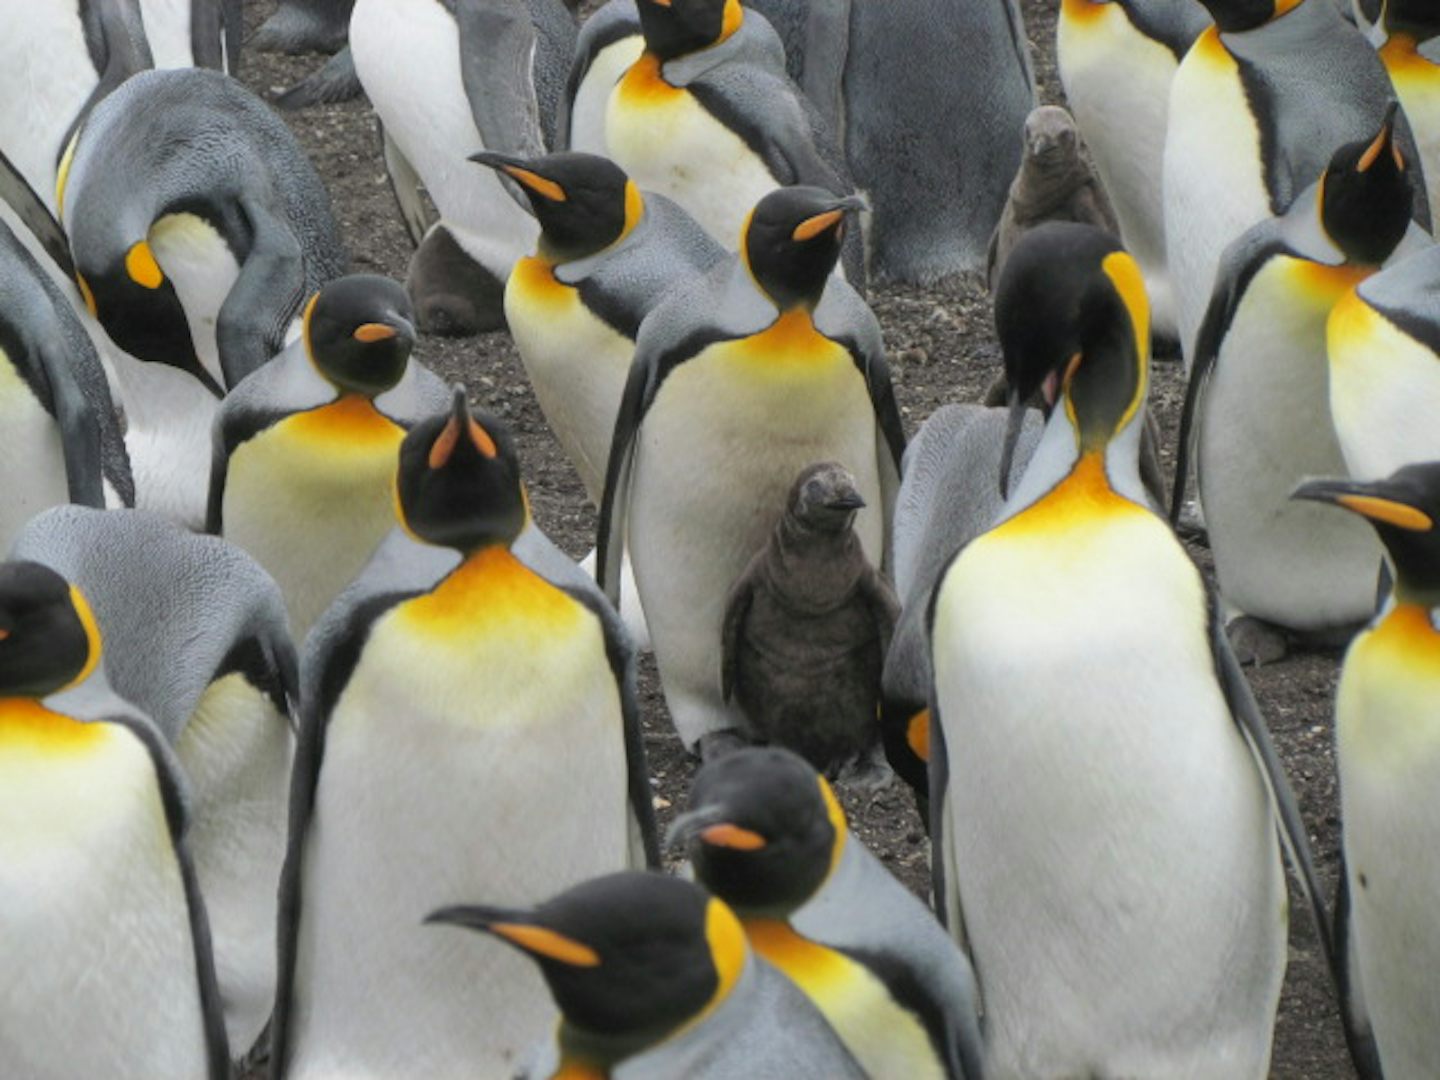 King penguins in the Falklands.